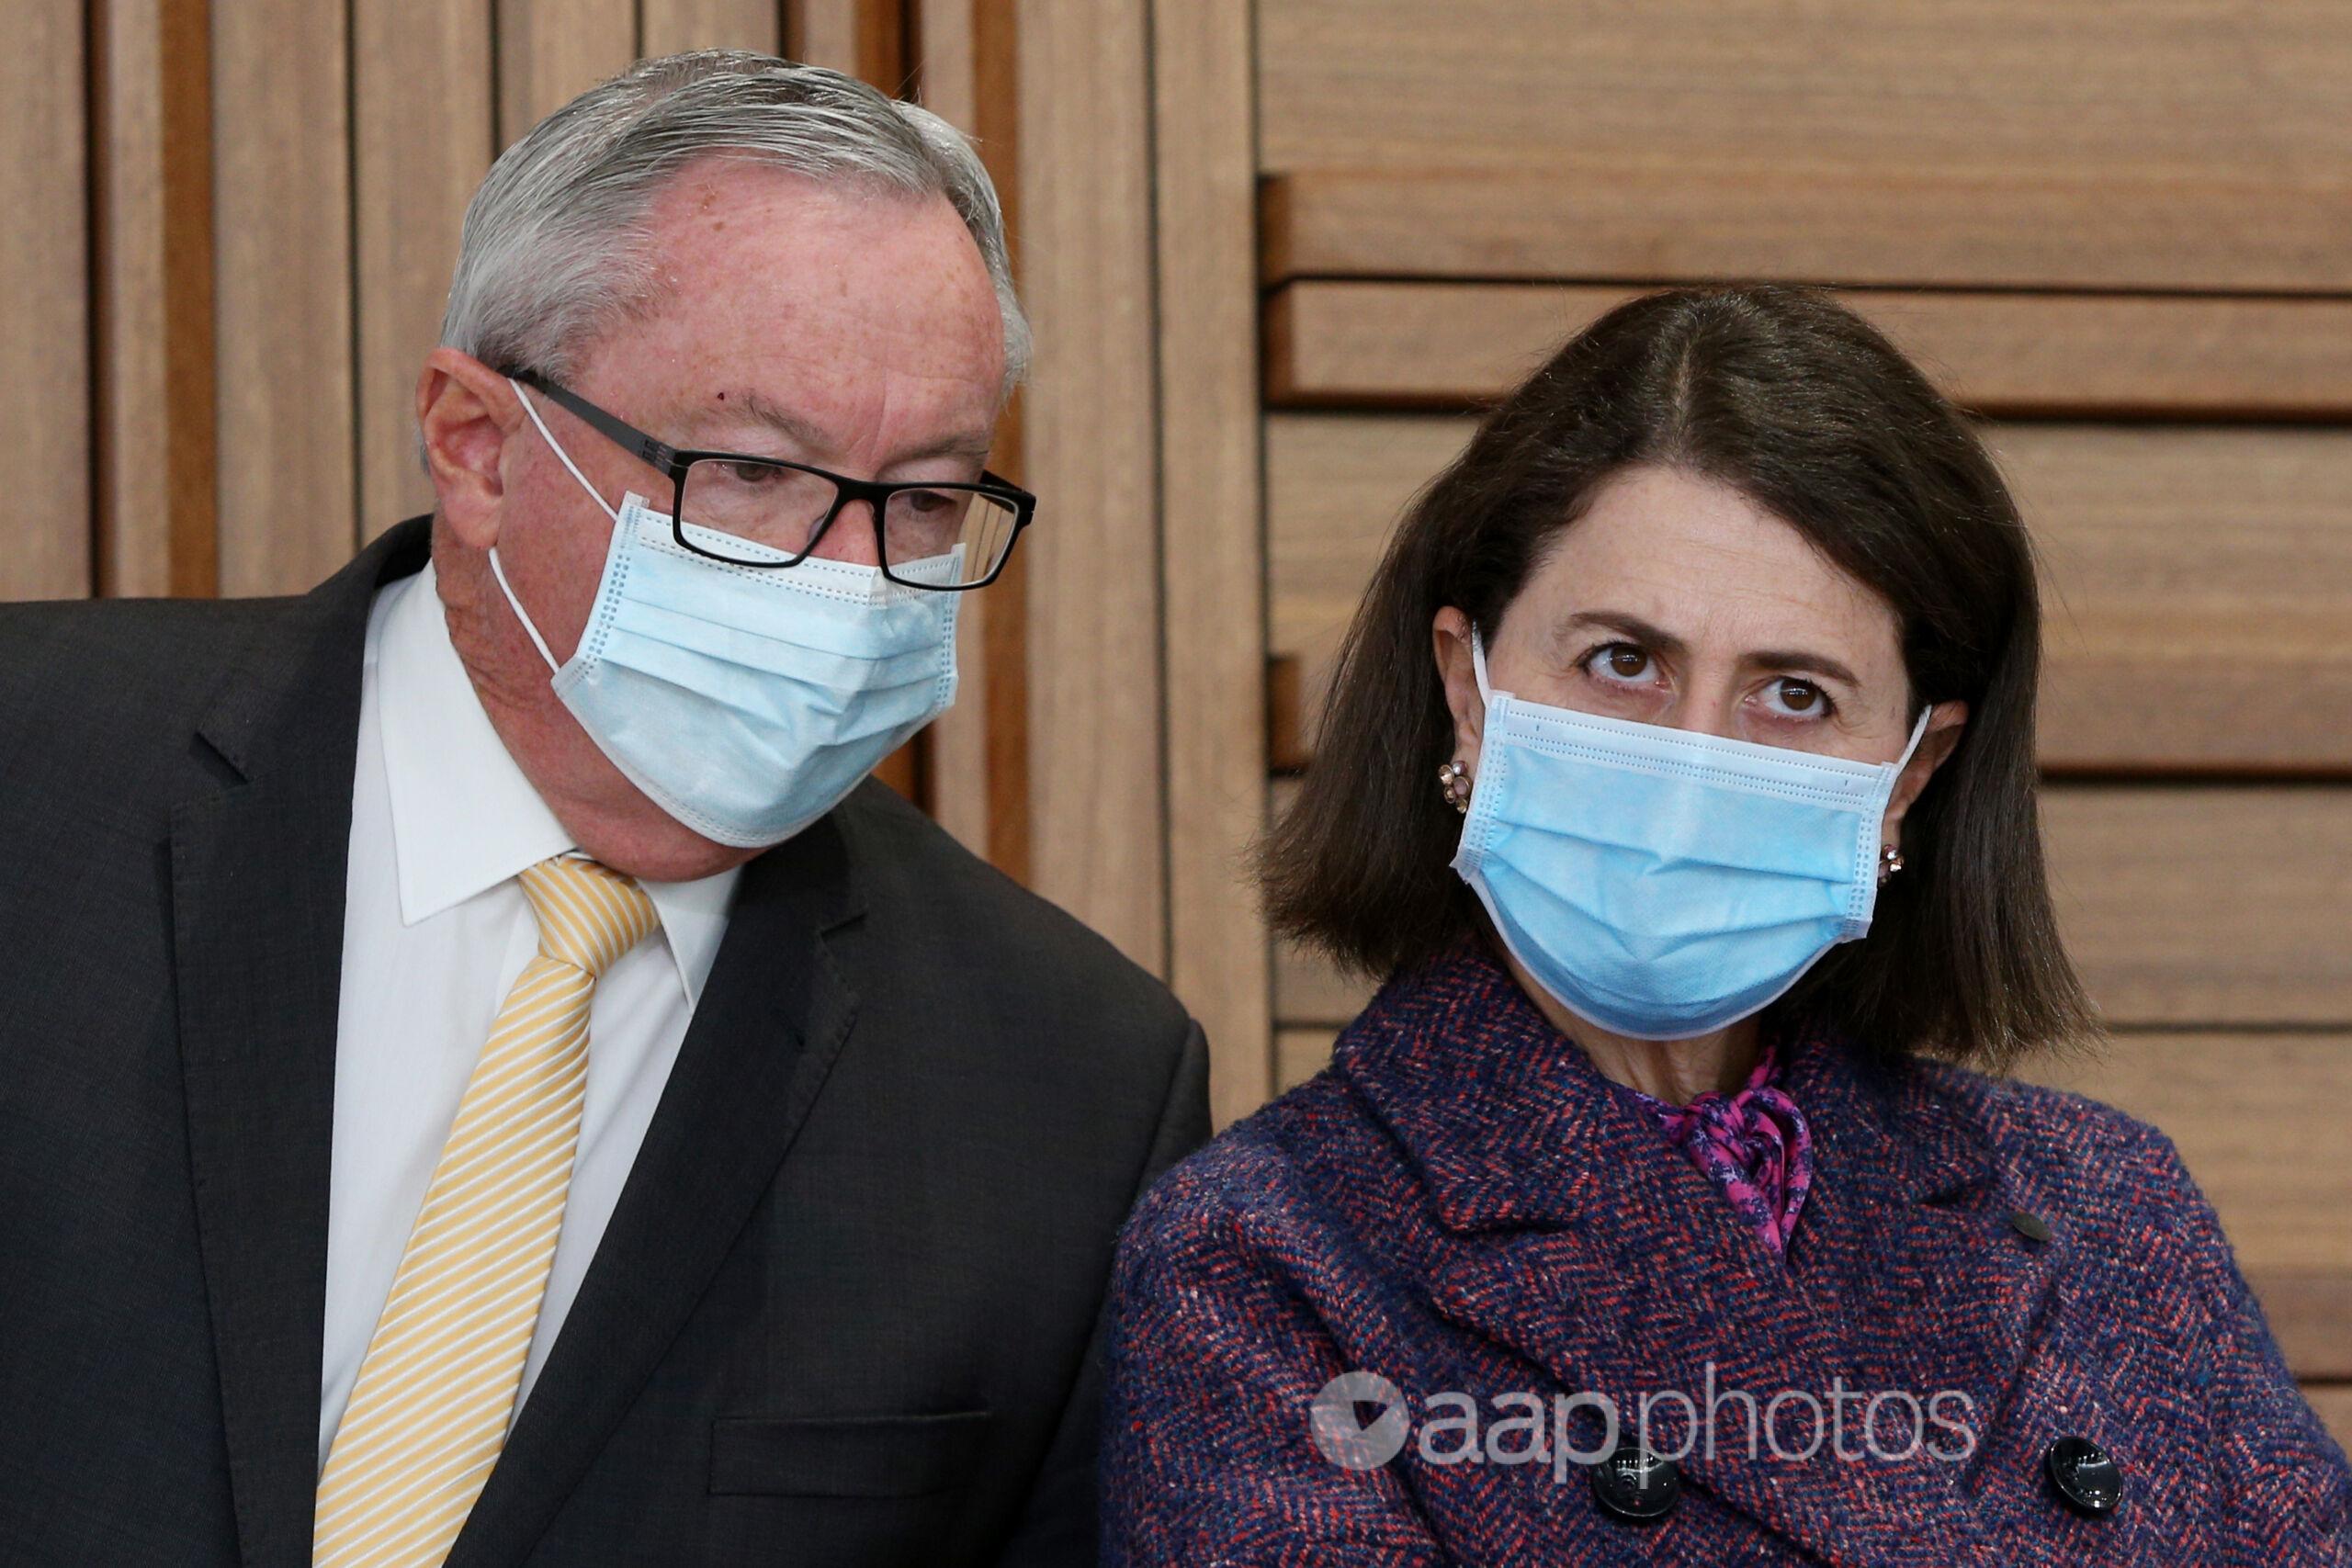 NSW Health Minister Brad Hazzard and Premier Gladys Berejiklian